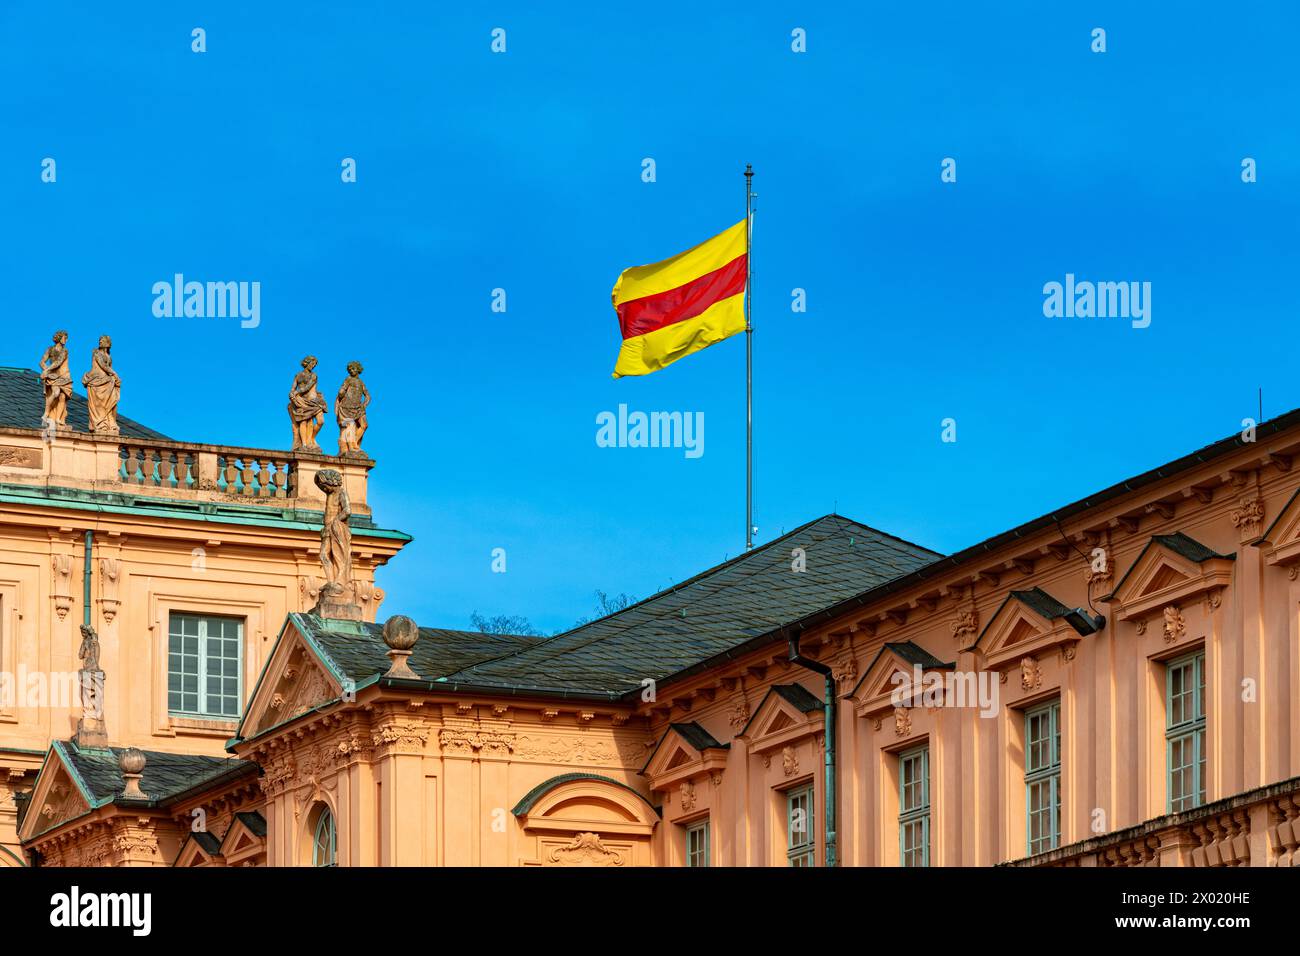 The baroque style castle in Rastatt city, The Baden flag, Baden Württemberg, Germany, Europe Stock Photo